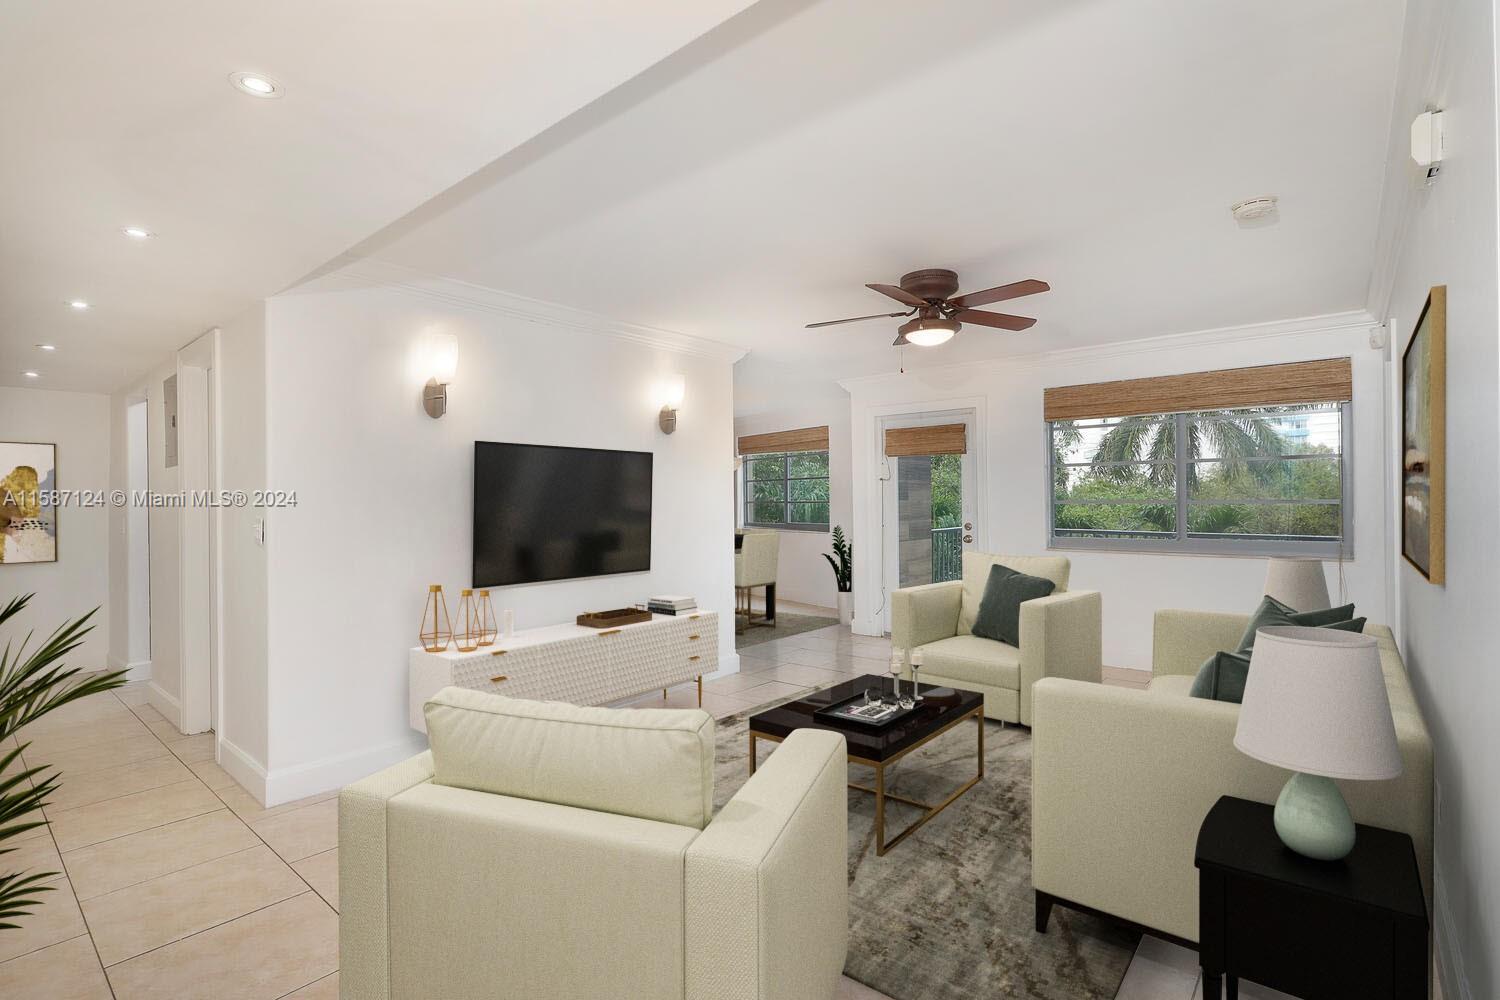 Rental Property at 220 Washington Ave 3A, Miami Beach, Miami-Dade County, Florida - Bedrooms: 2 
Bathrooms: 2  - $3,600 MO.